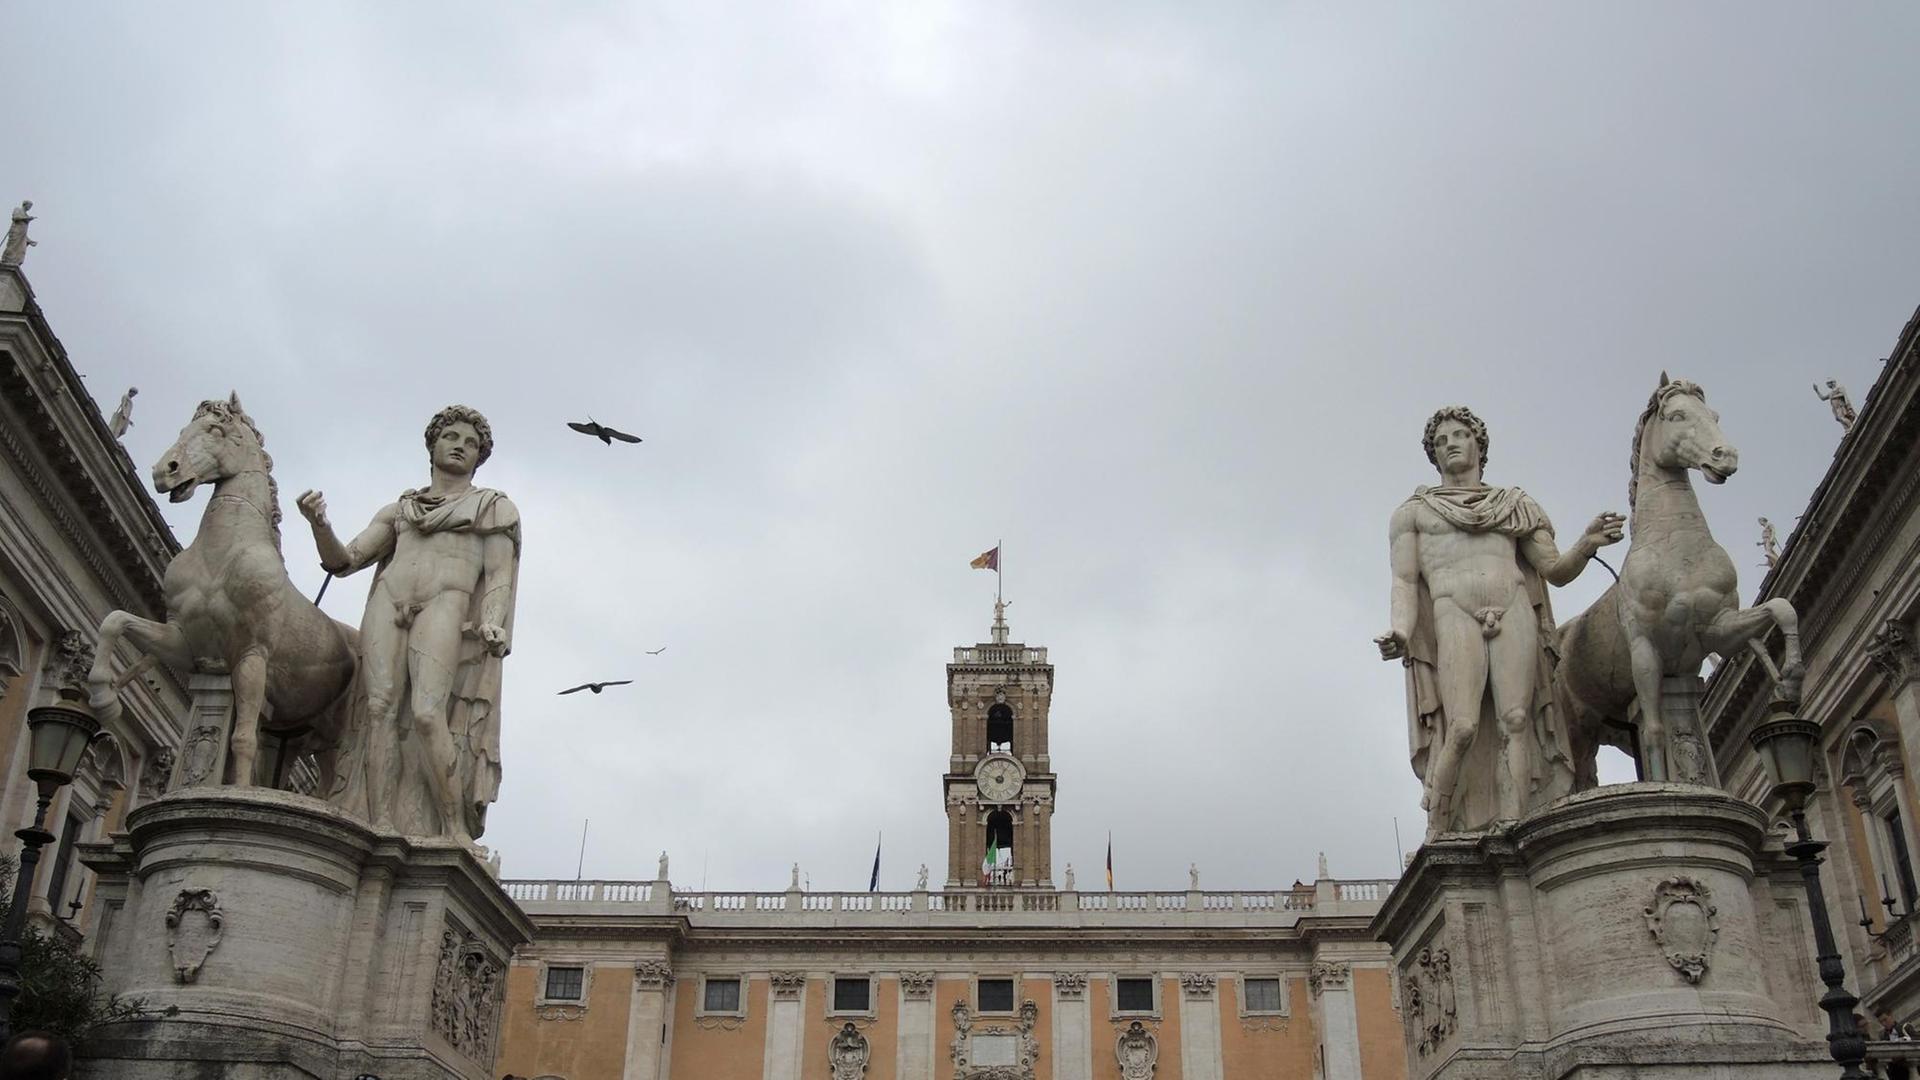 Blick auf das Rathaus der Stadt Rom auf dem Kapitolshügel in Rom. Nebenan in den Räumlichkeiten der kapitolinischen Museen kommen die 27 EU-Staats- und Regierungschefs zu einem Sondergipfel zusammen.